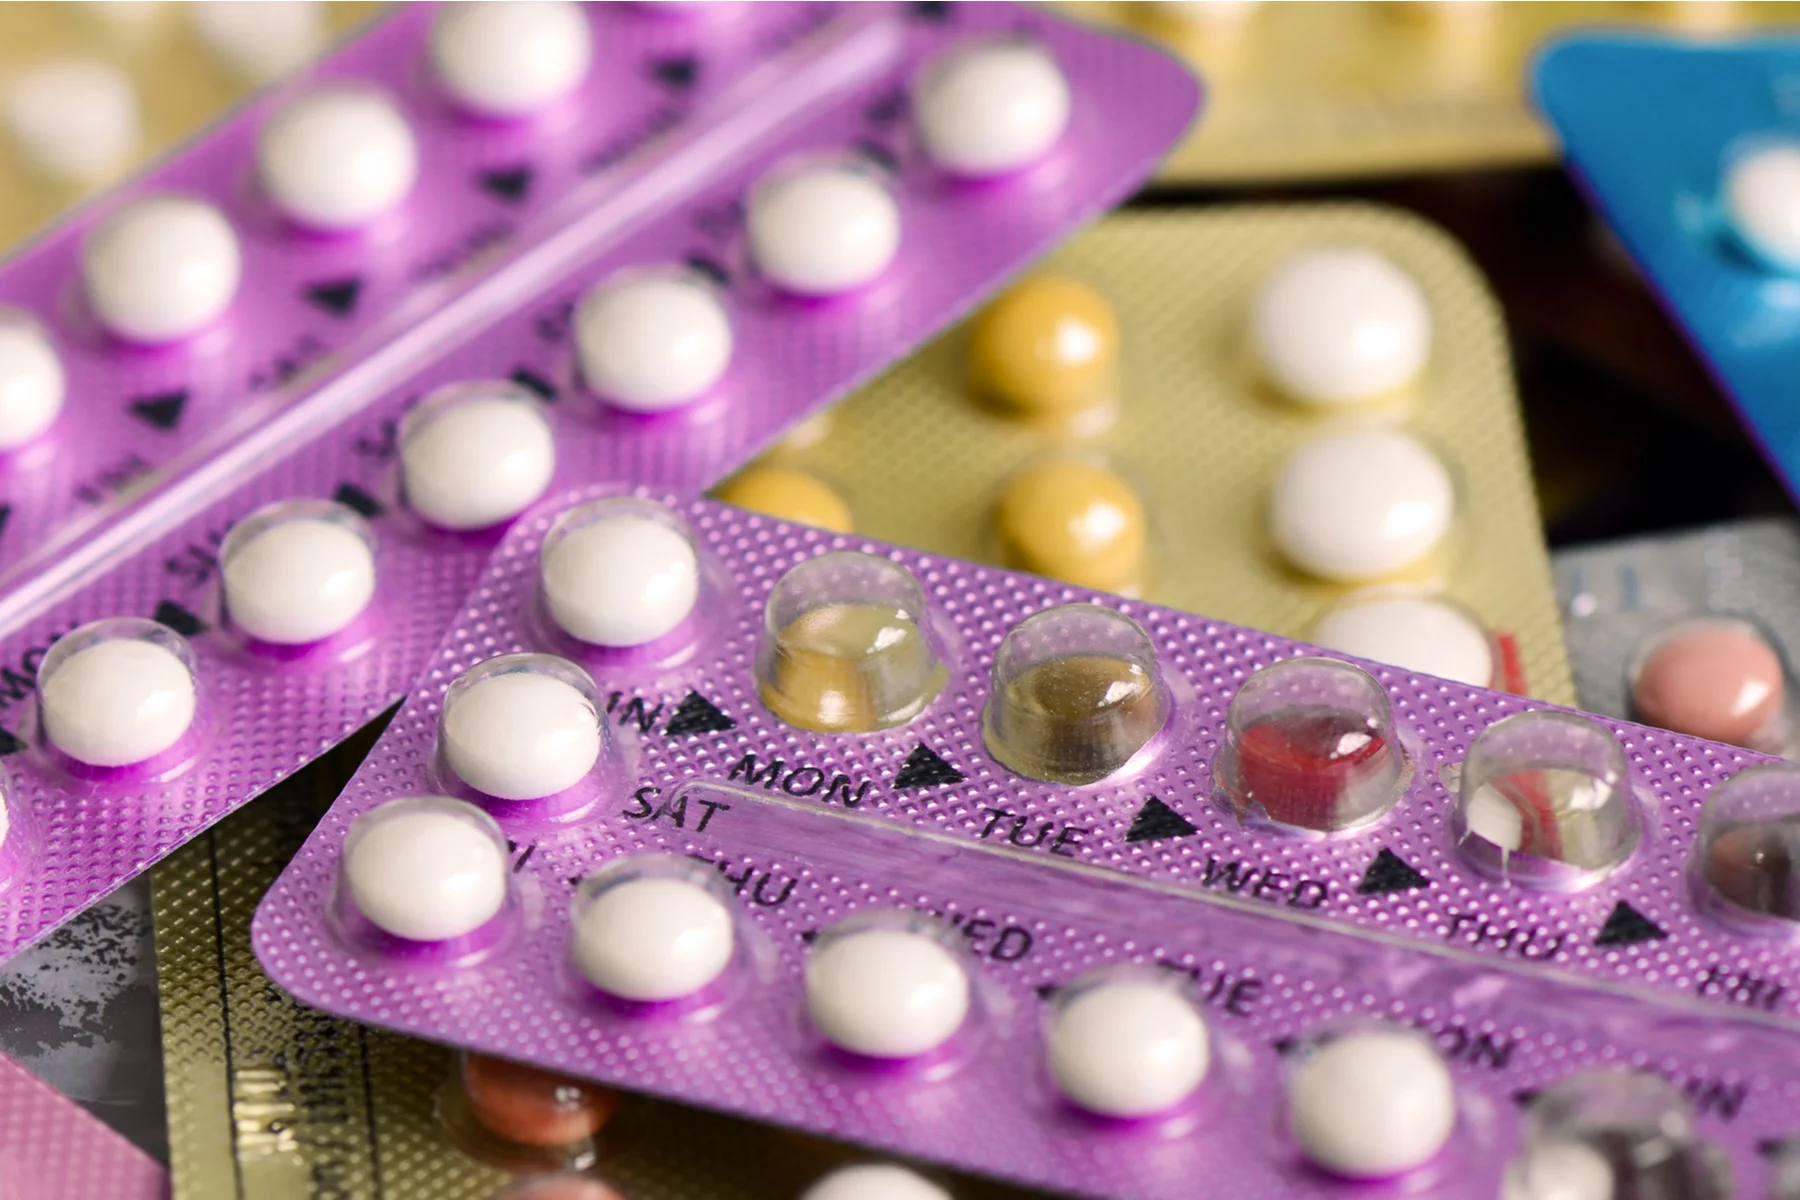 Contraceptive birth control pills